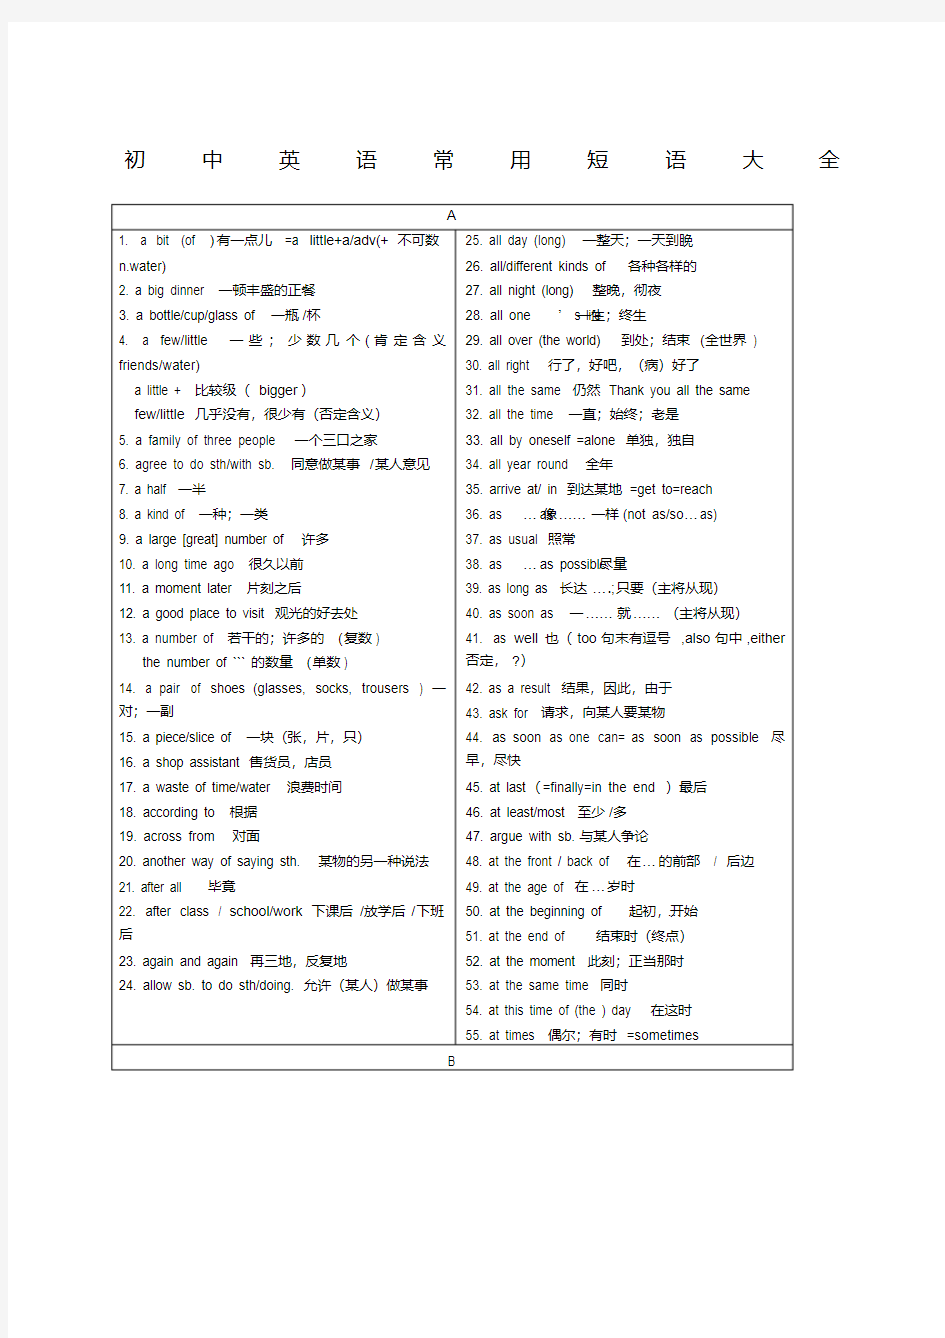 初中英语短语整理完全.pdf